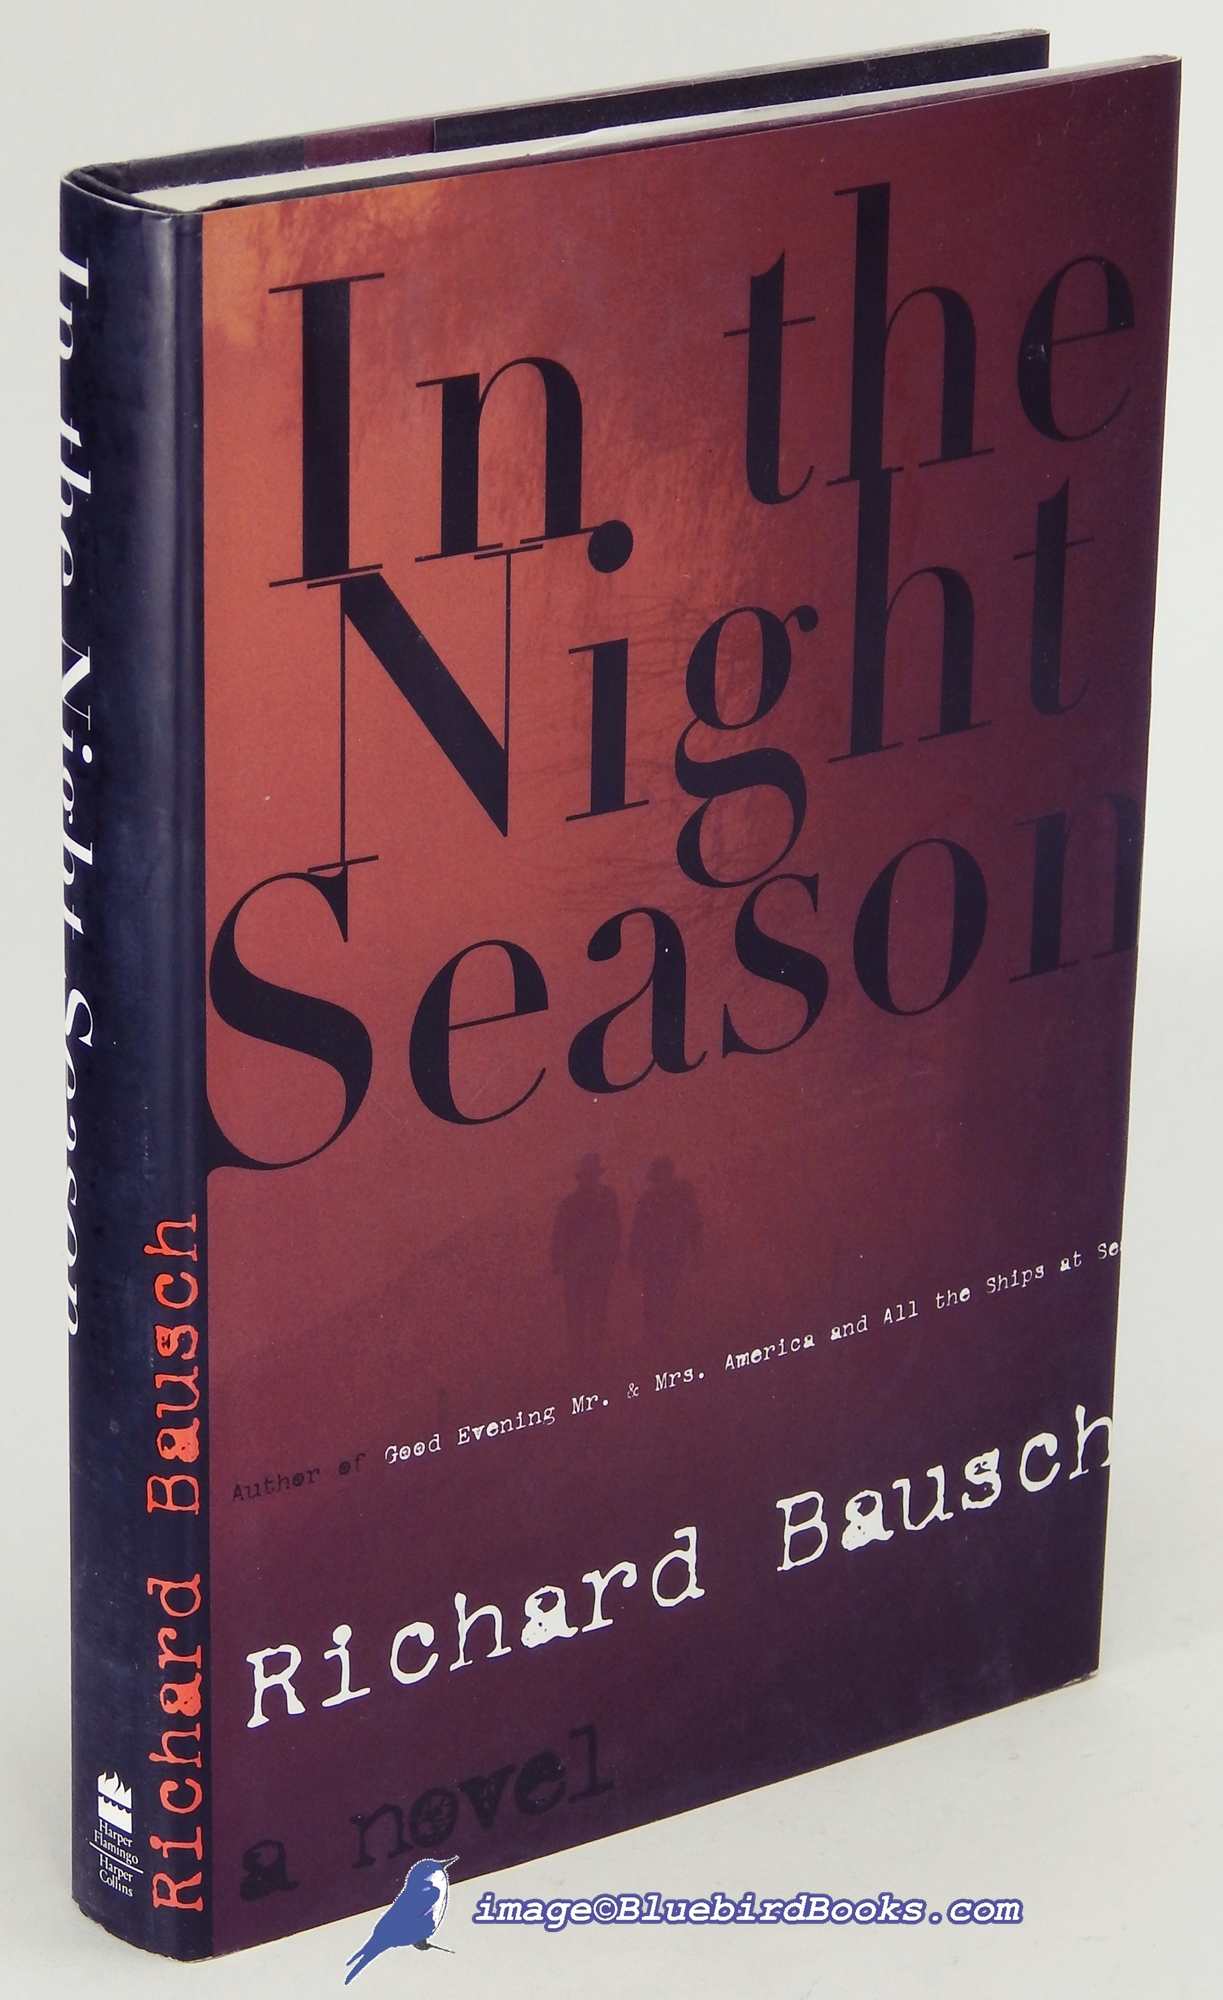 BAUSCH, RICHARD - In the Night Season